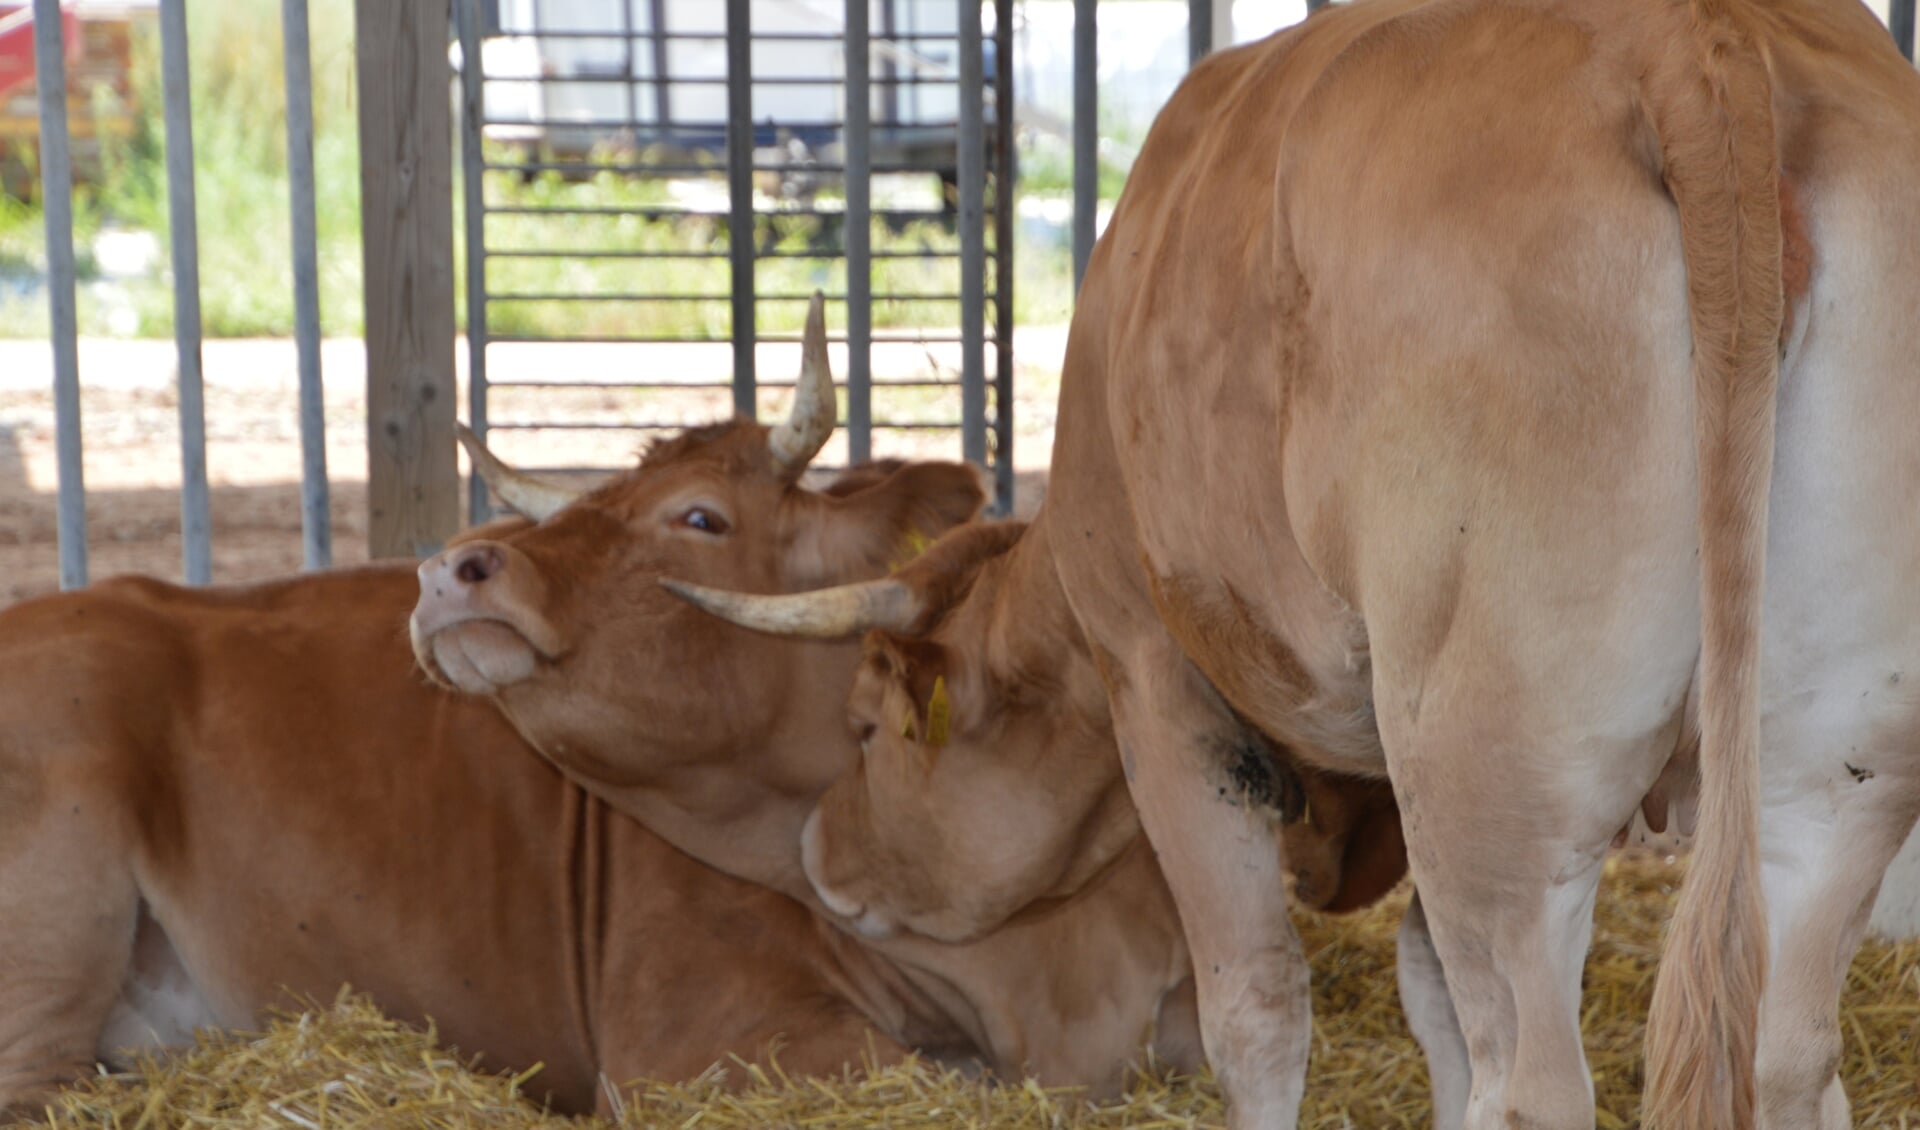 Limousin koeien bij de familie Van Bommel. Foto: PR